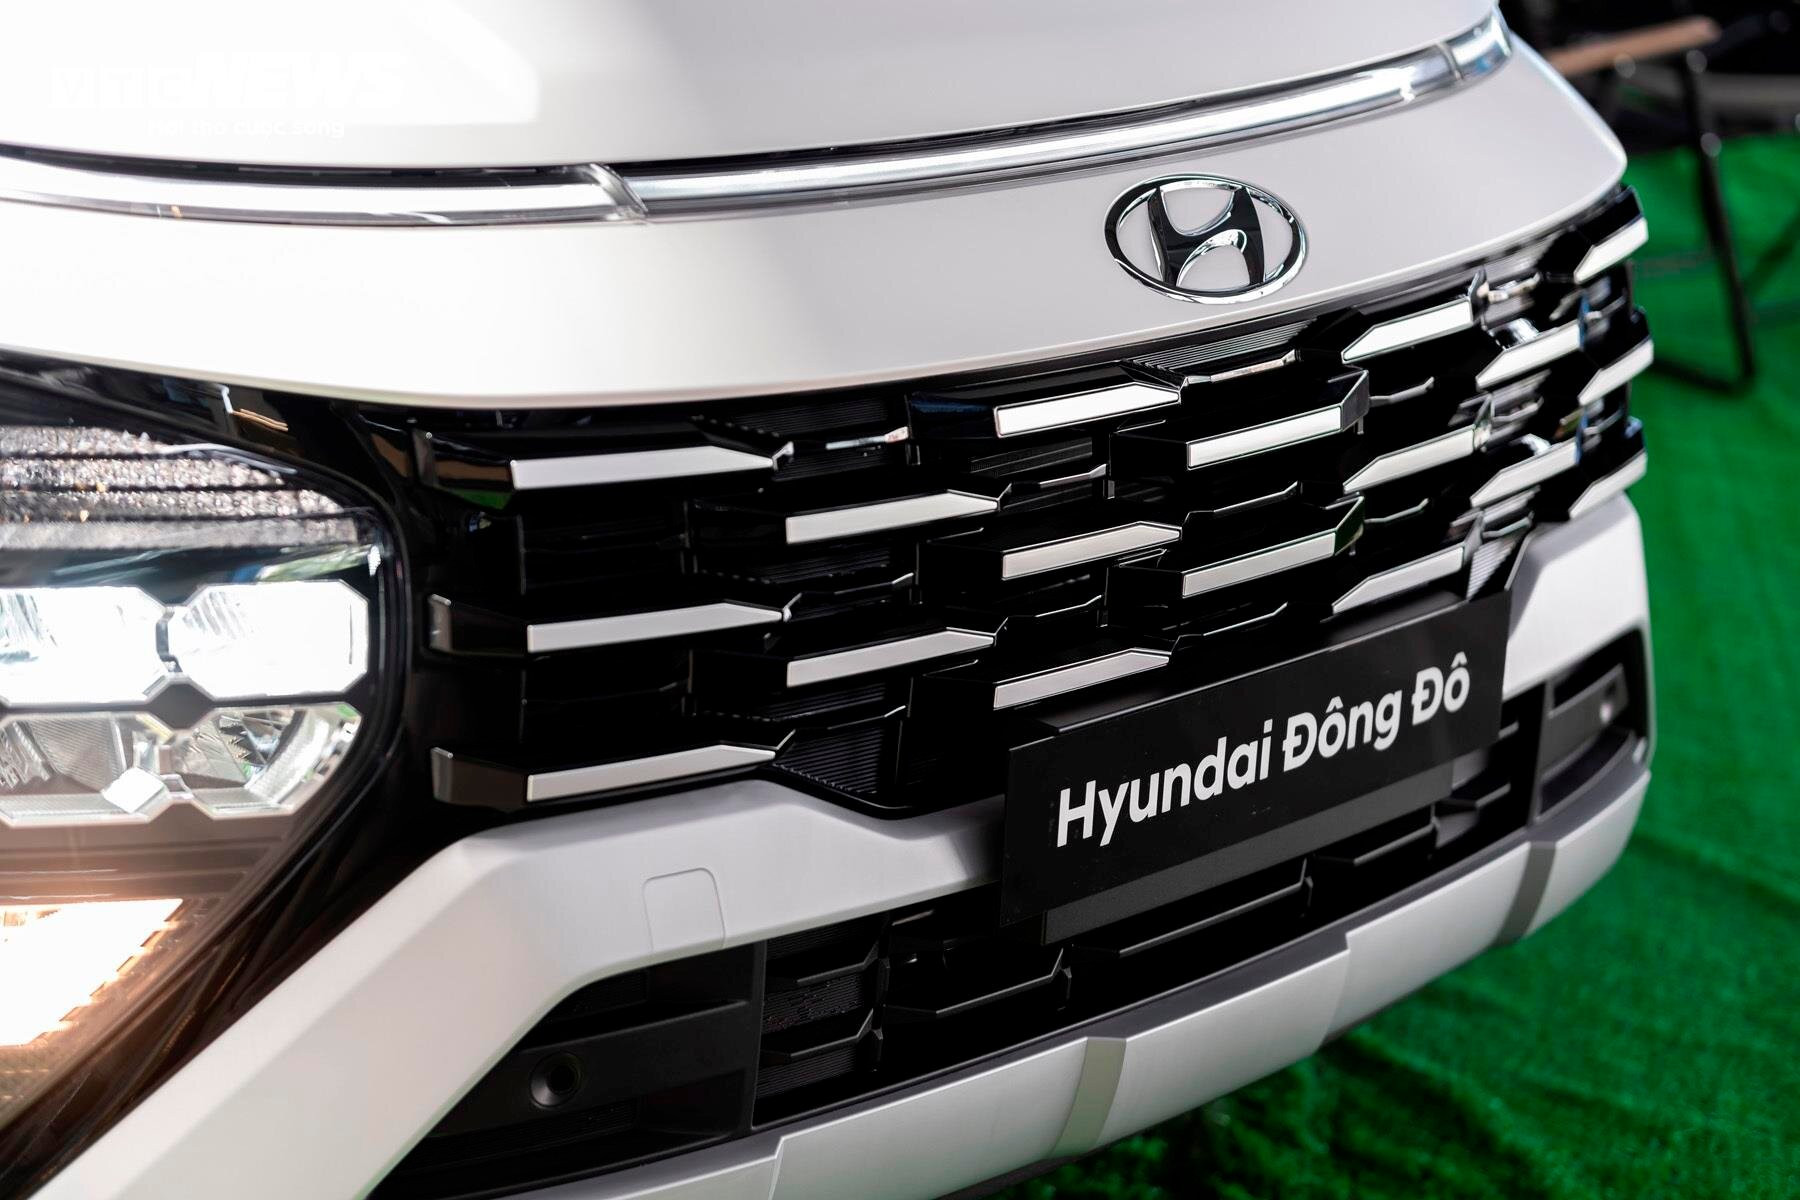 Hyundai Stargazer X đã chính thức về Việt Nam với 2 phiên bản Tiêu chuẩn và X cùng giá bán tương ứng là 559 triệu và 599 triệu đồng. Về thiết kế bên ngoài Hyundai Stargazer X không có quá nhiều khác biệt so với Hyundai Stargazer thường nhưng được bổ sung thêm một số chi tiết giúp tăng sự tiện nghi và an toàn trong quá trình vận hành. Trong đó có việc sở hữu lưới tản nhiệt thiết kế mới mang hơi hướng 3D nổi bật hơn.